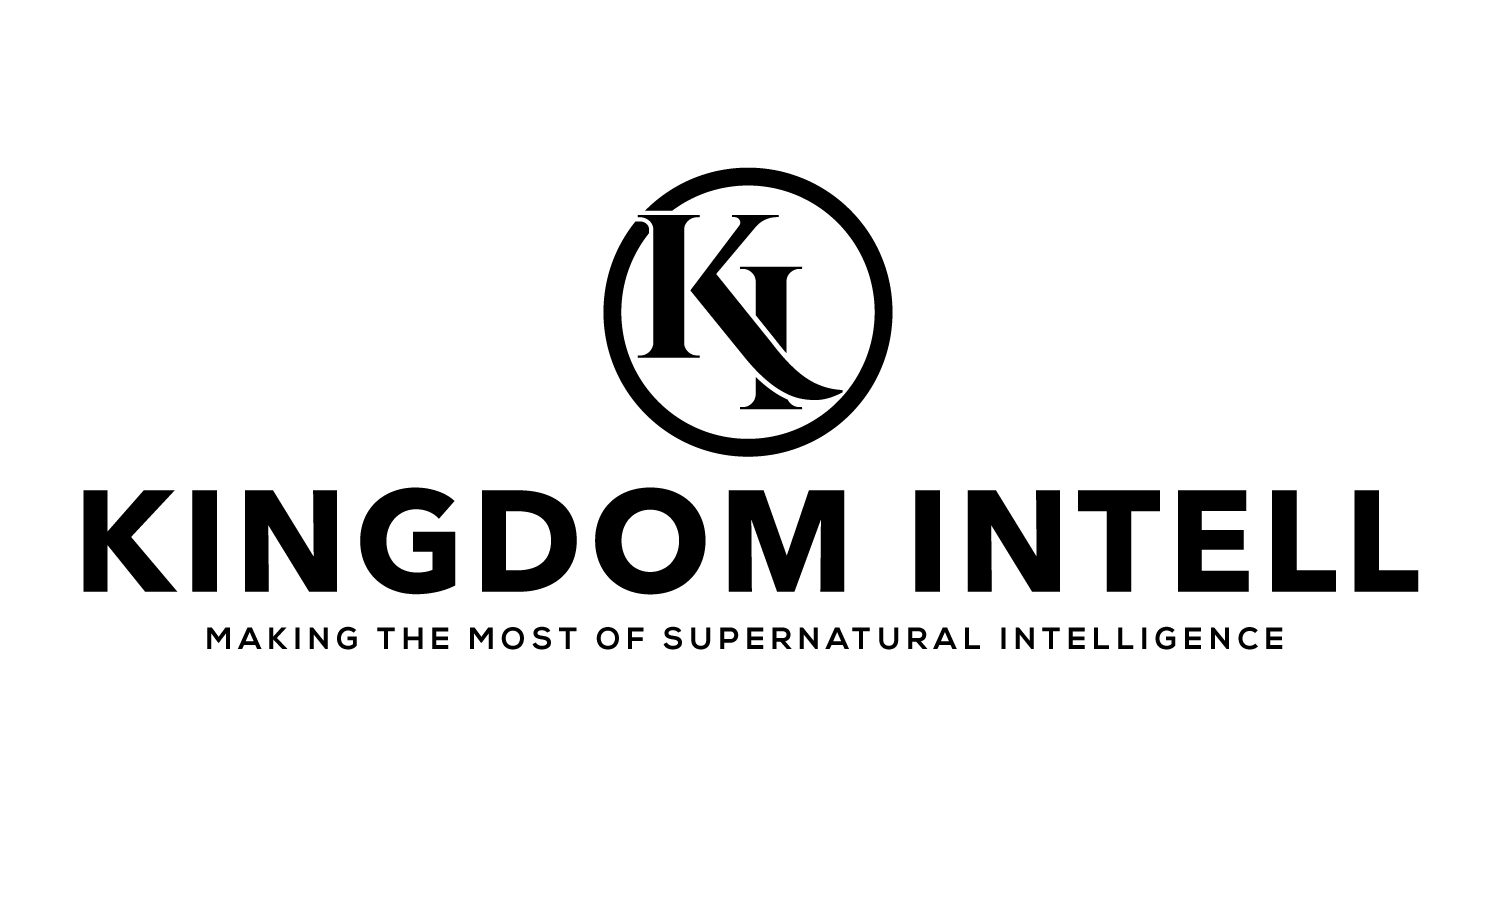 Kingdom Intell